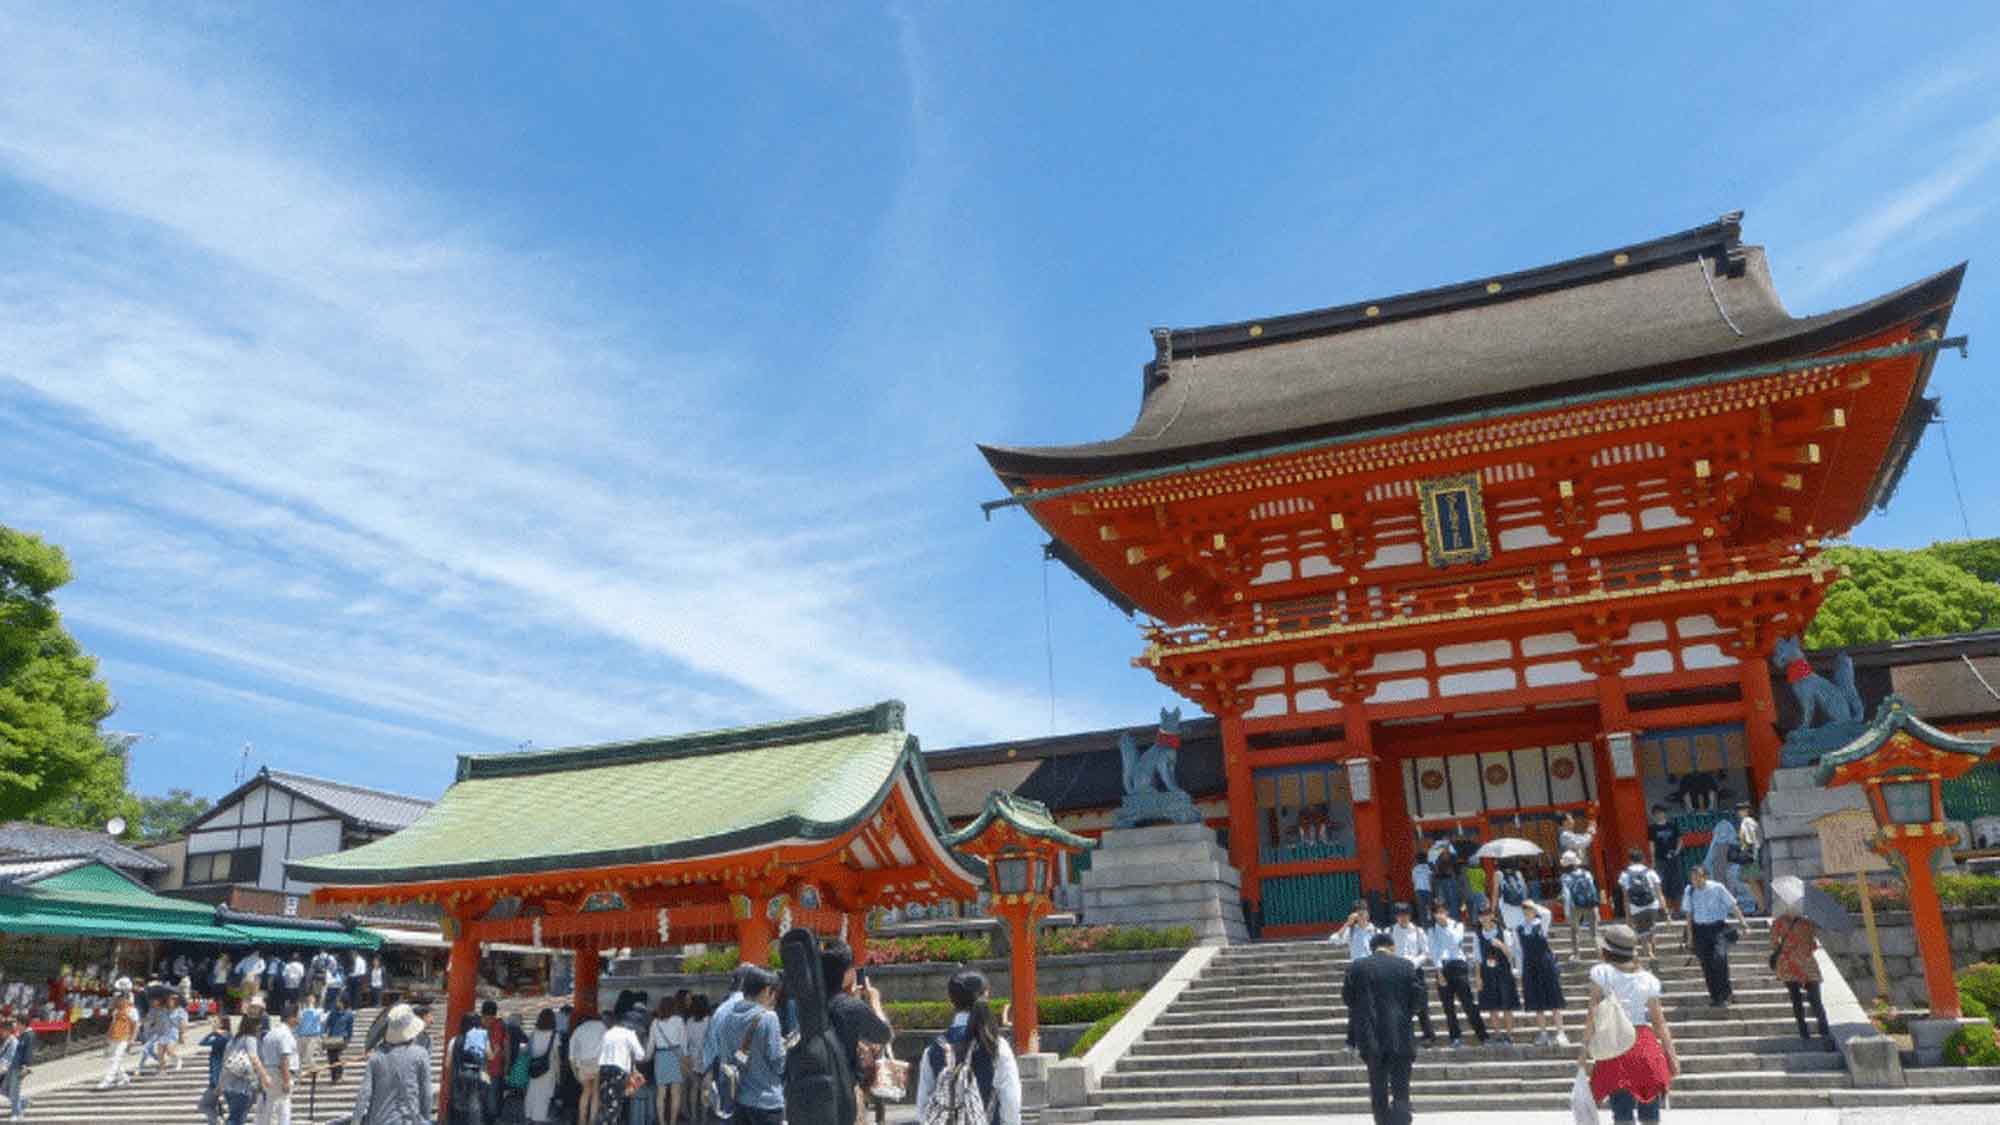 【京都・伏見稲荷大社】京都観光の代名詞的な朱塗りの「千本鳥居」は有名です。ホテルから約1時間。